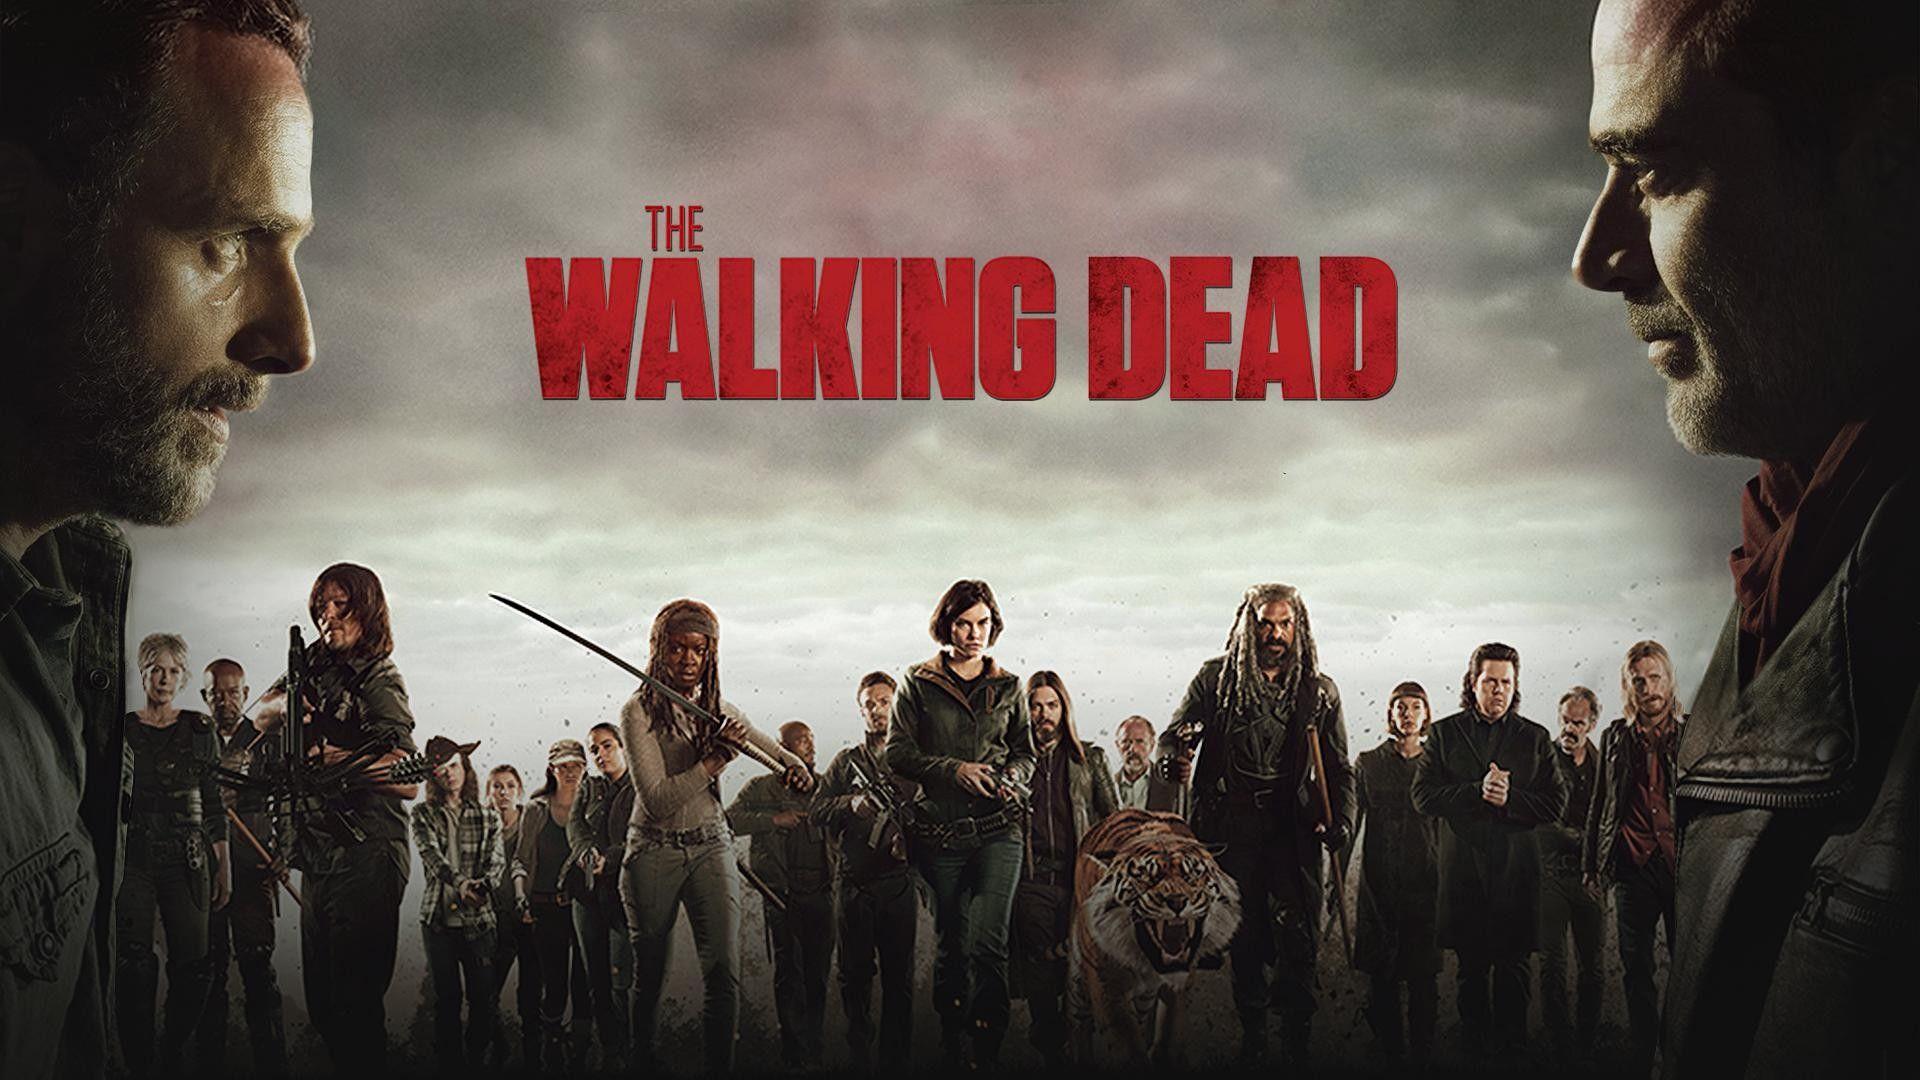 The Walking Dead 4k Wallpapers Top Free The Walking Dead 4k Backgrounds Wallpaperaccess